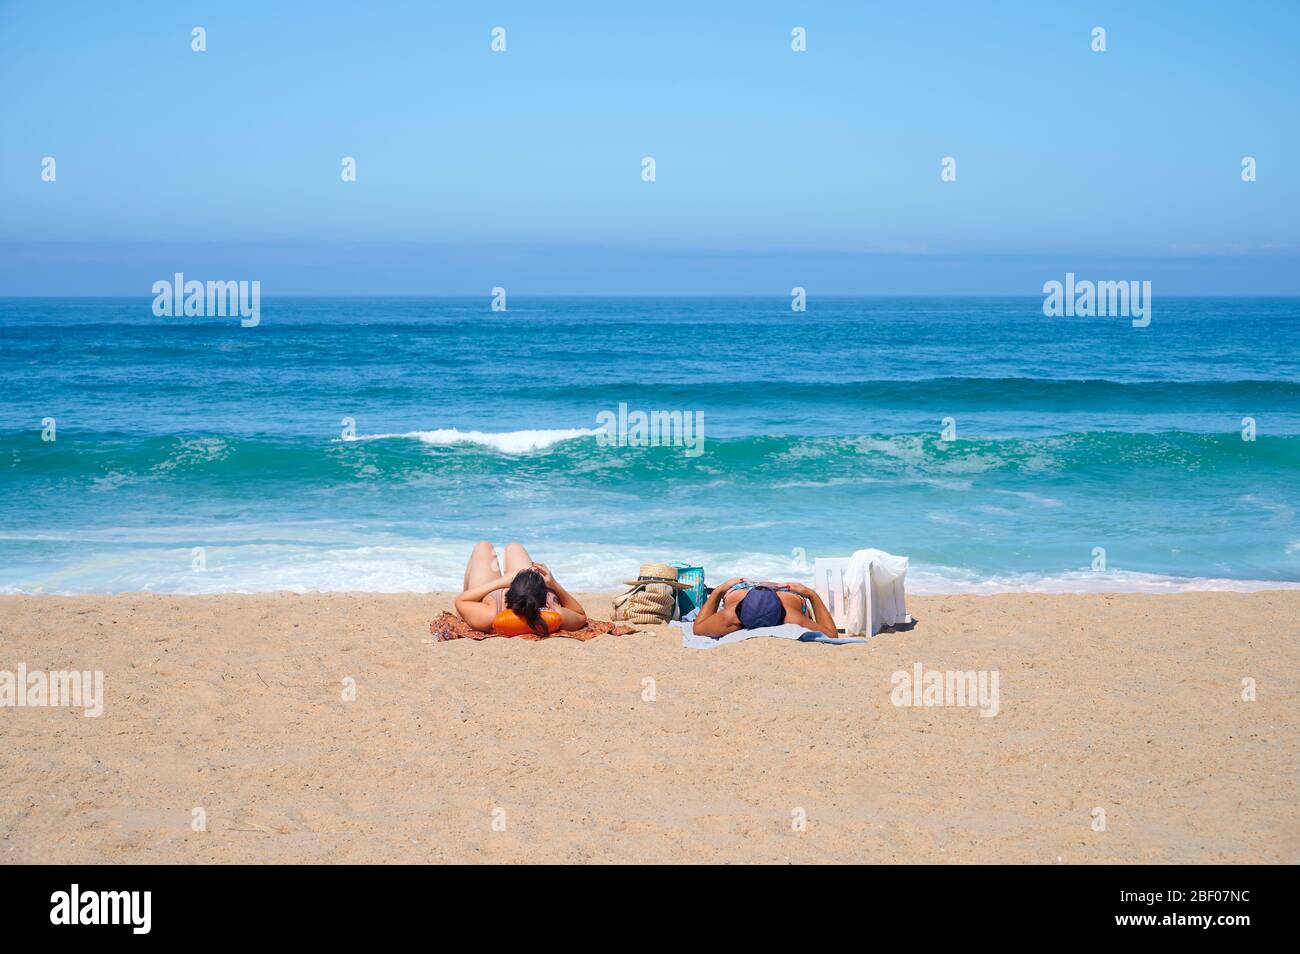 Beach of Faz do Arelho at portugal in summer Stock Photo